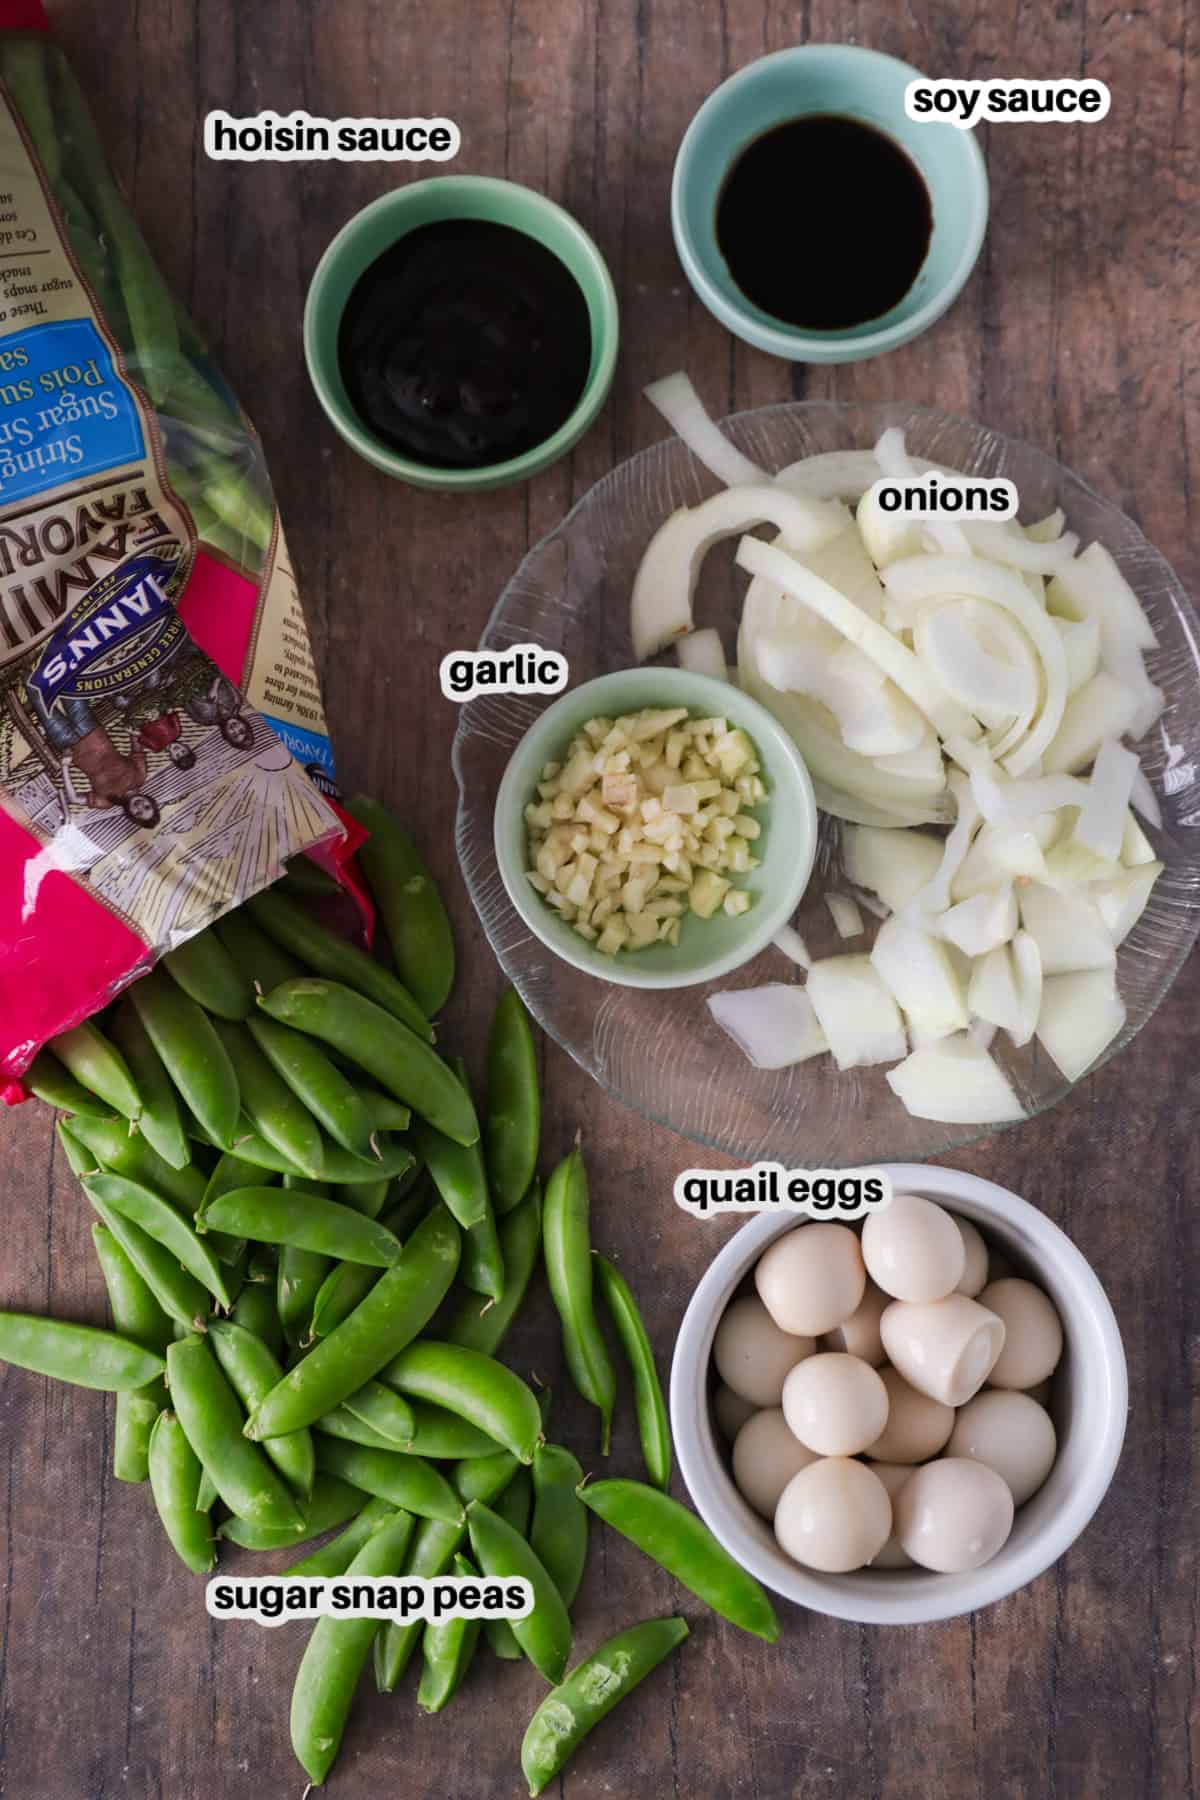 Sugar Snap peas stir fry ingredients.